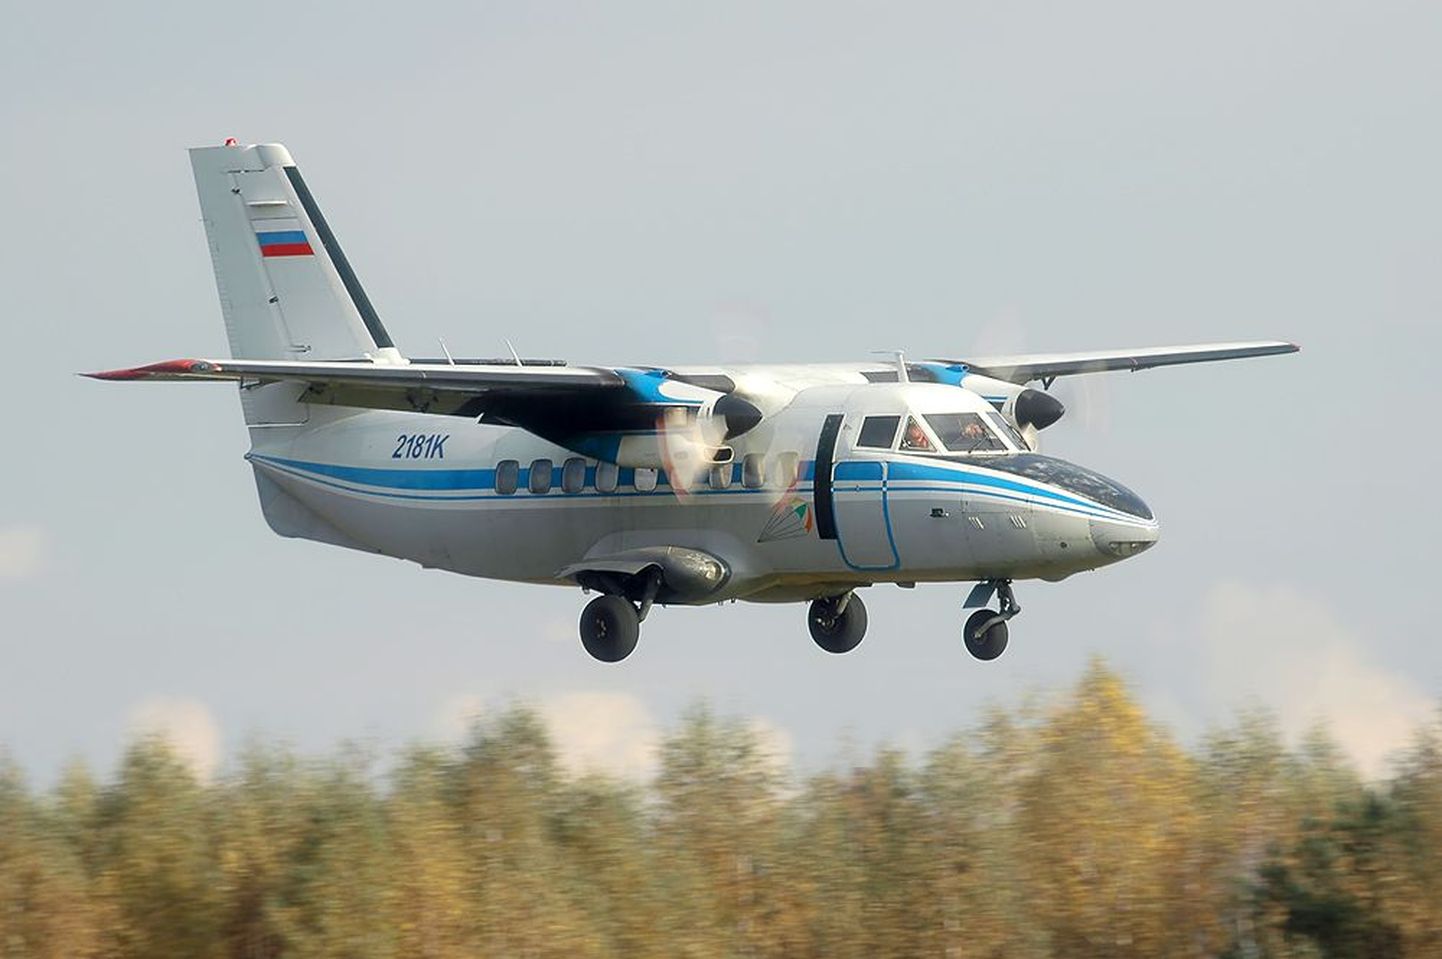 Vene lennuregistris olev L-410 on sarnane sellega, mis sooritas Ukrainas ebaõnnestunud hädamaandumise.